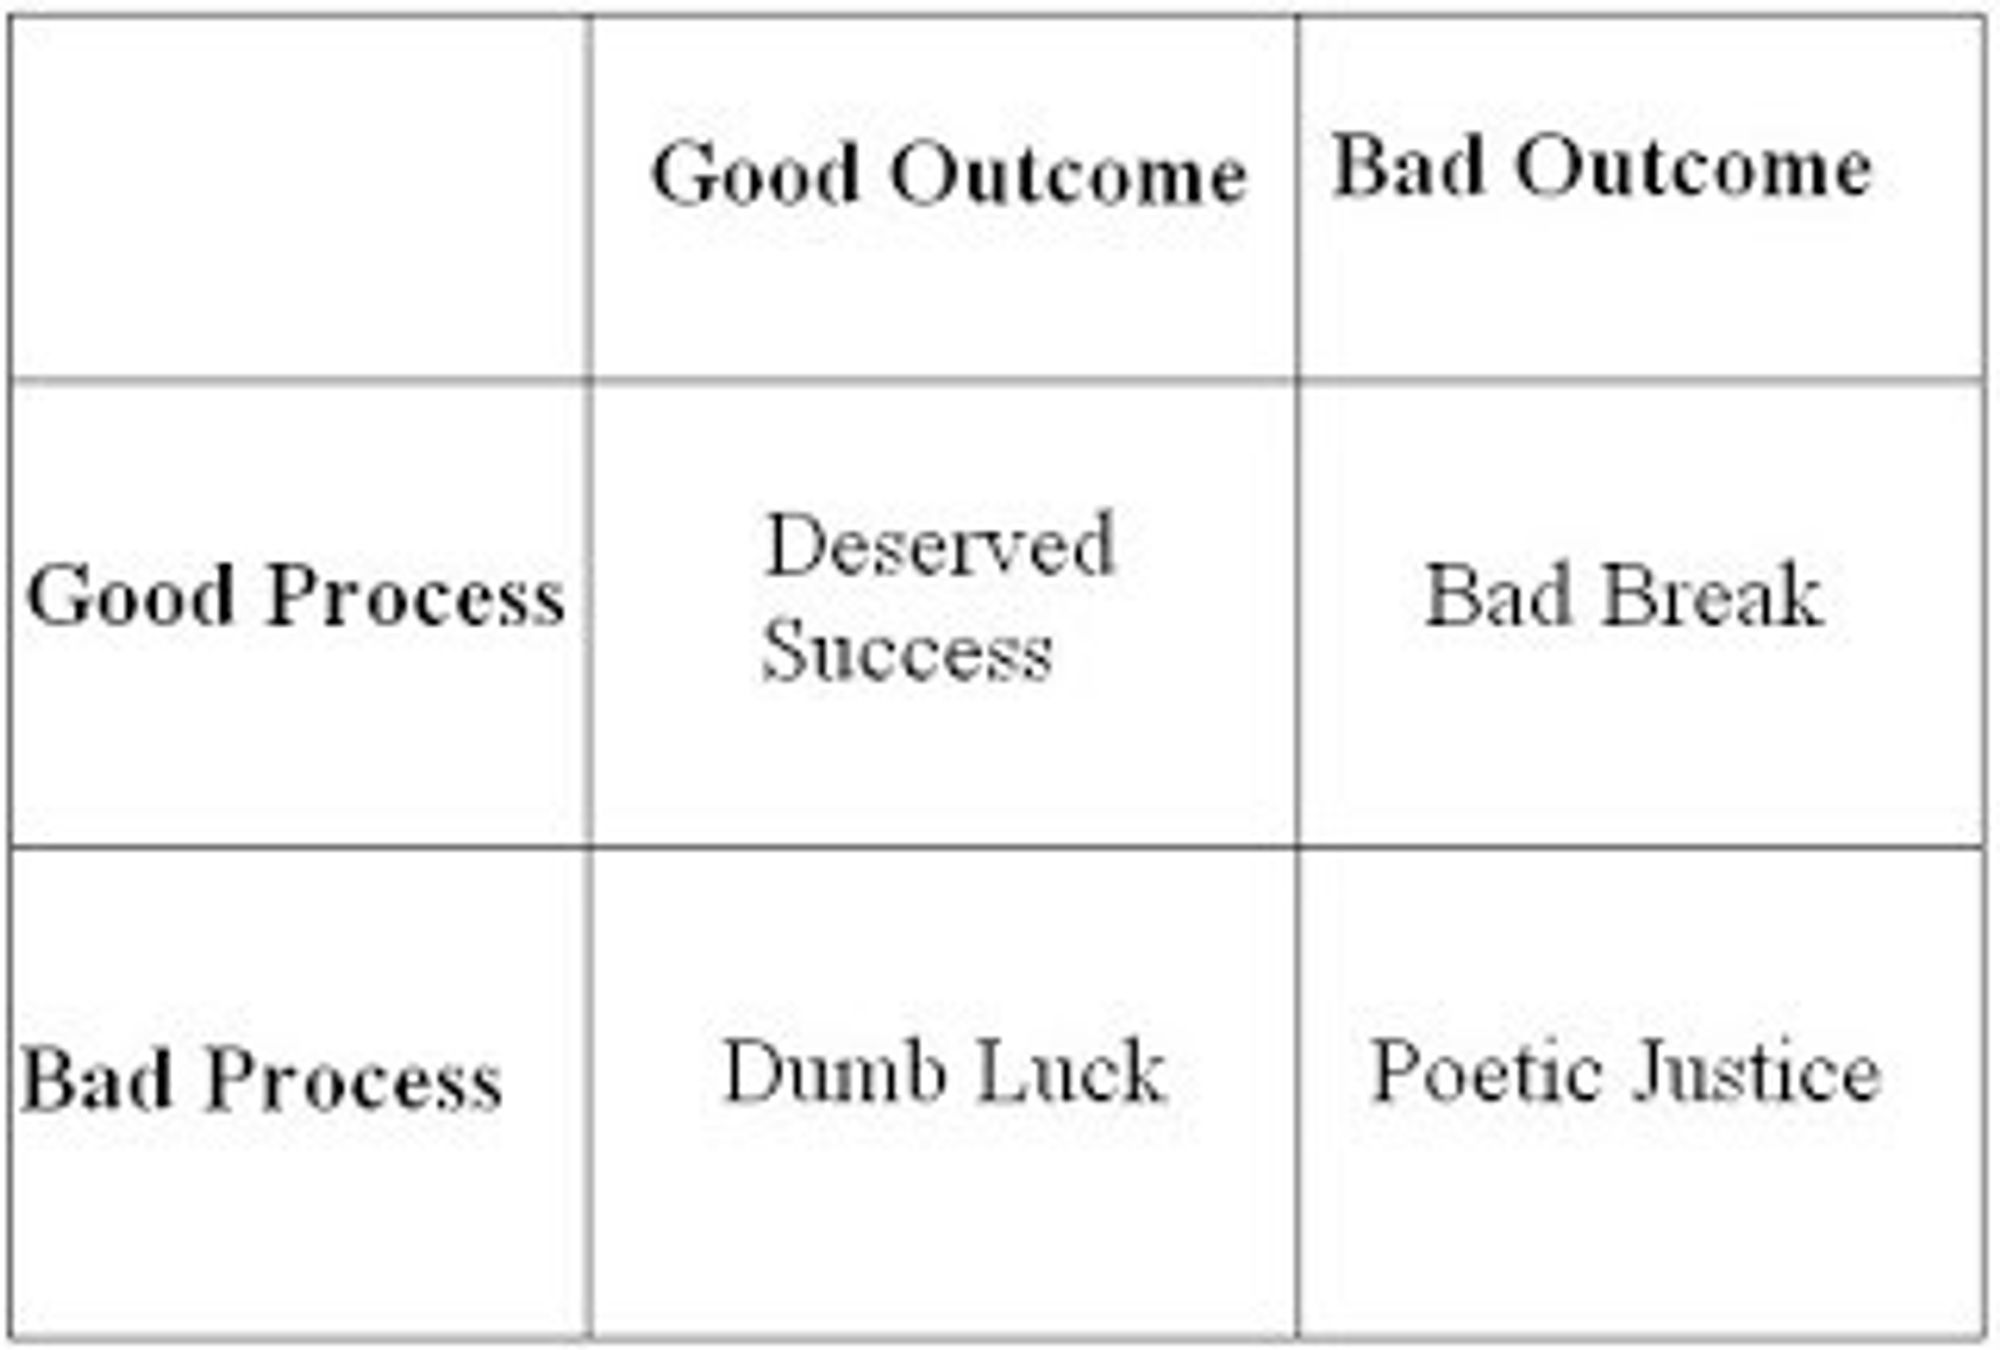 Decision making model uitgelegd in een afbeelding uit het boek ‘Winning Decisions’.